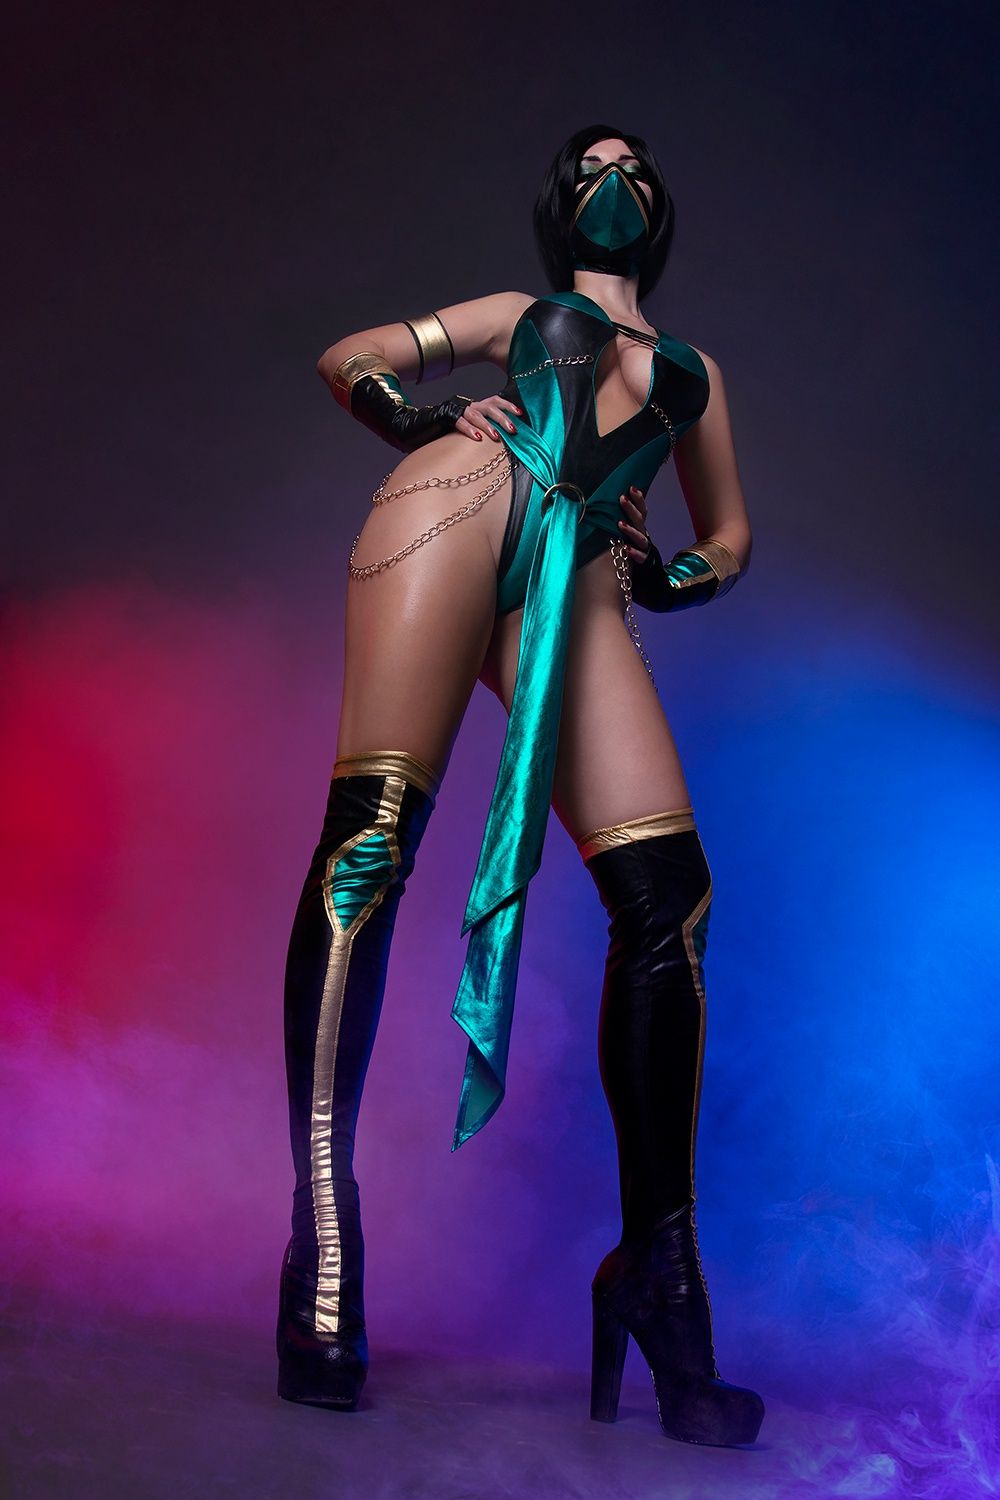 Косплей на Jade из Mortal Kombat &mdash; секс и немного боевых искусств. Источник: vk.com/agflower_cosplay. Косплеер: AGflower.
Фото: Murzik.